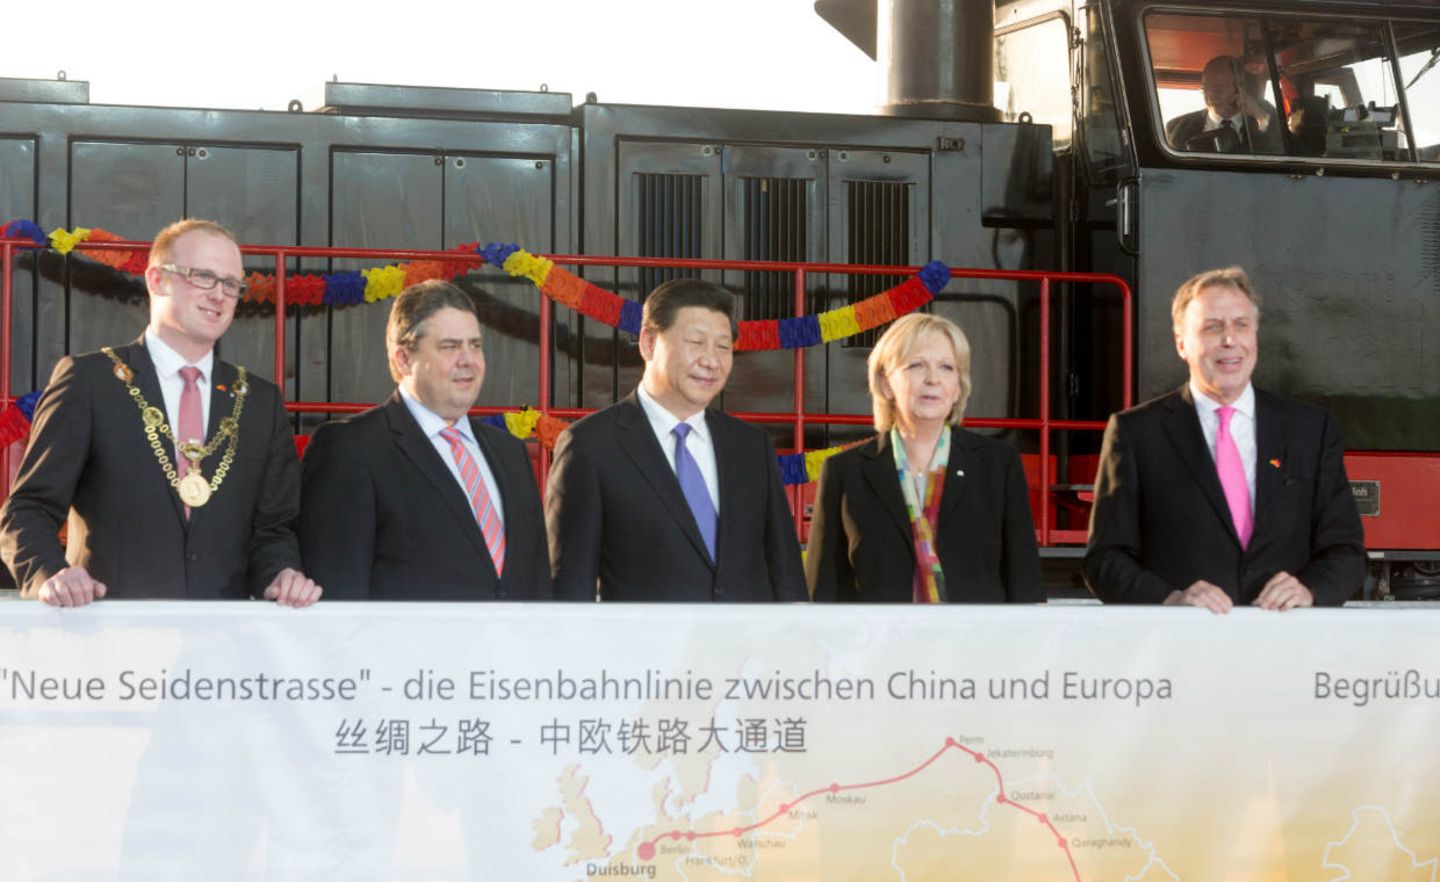 Xi Jinping in Duisburg